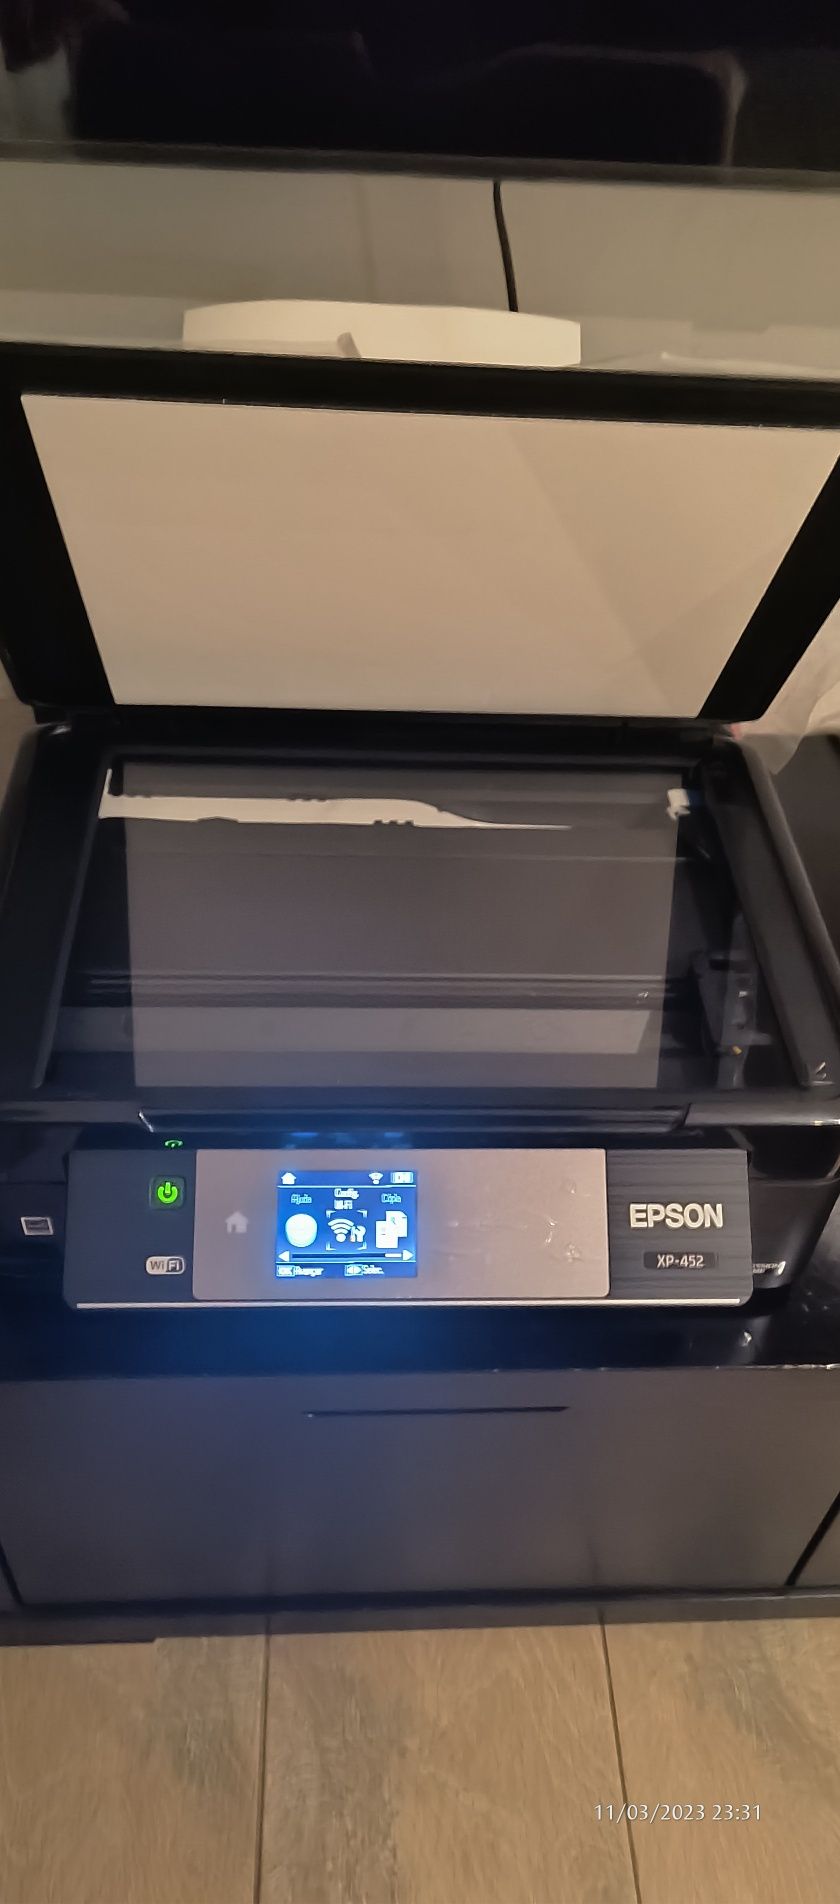 2 impressoras Epson a funcionar € único